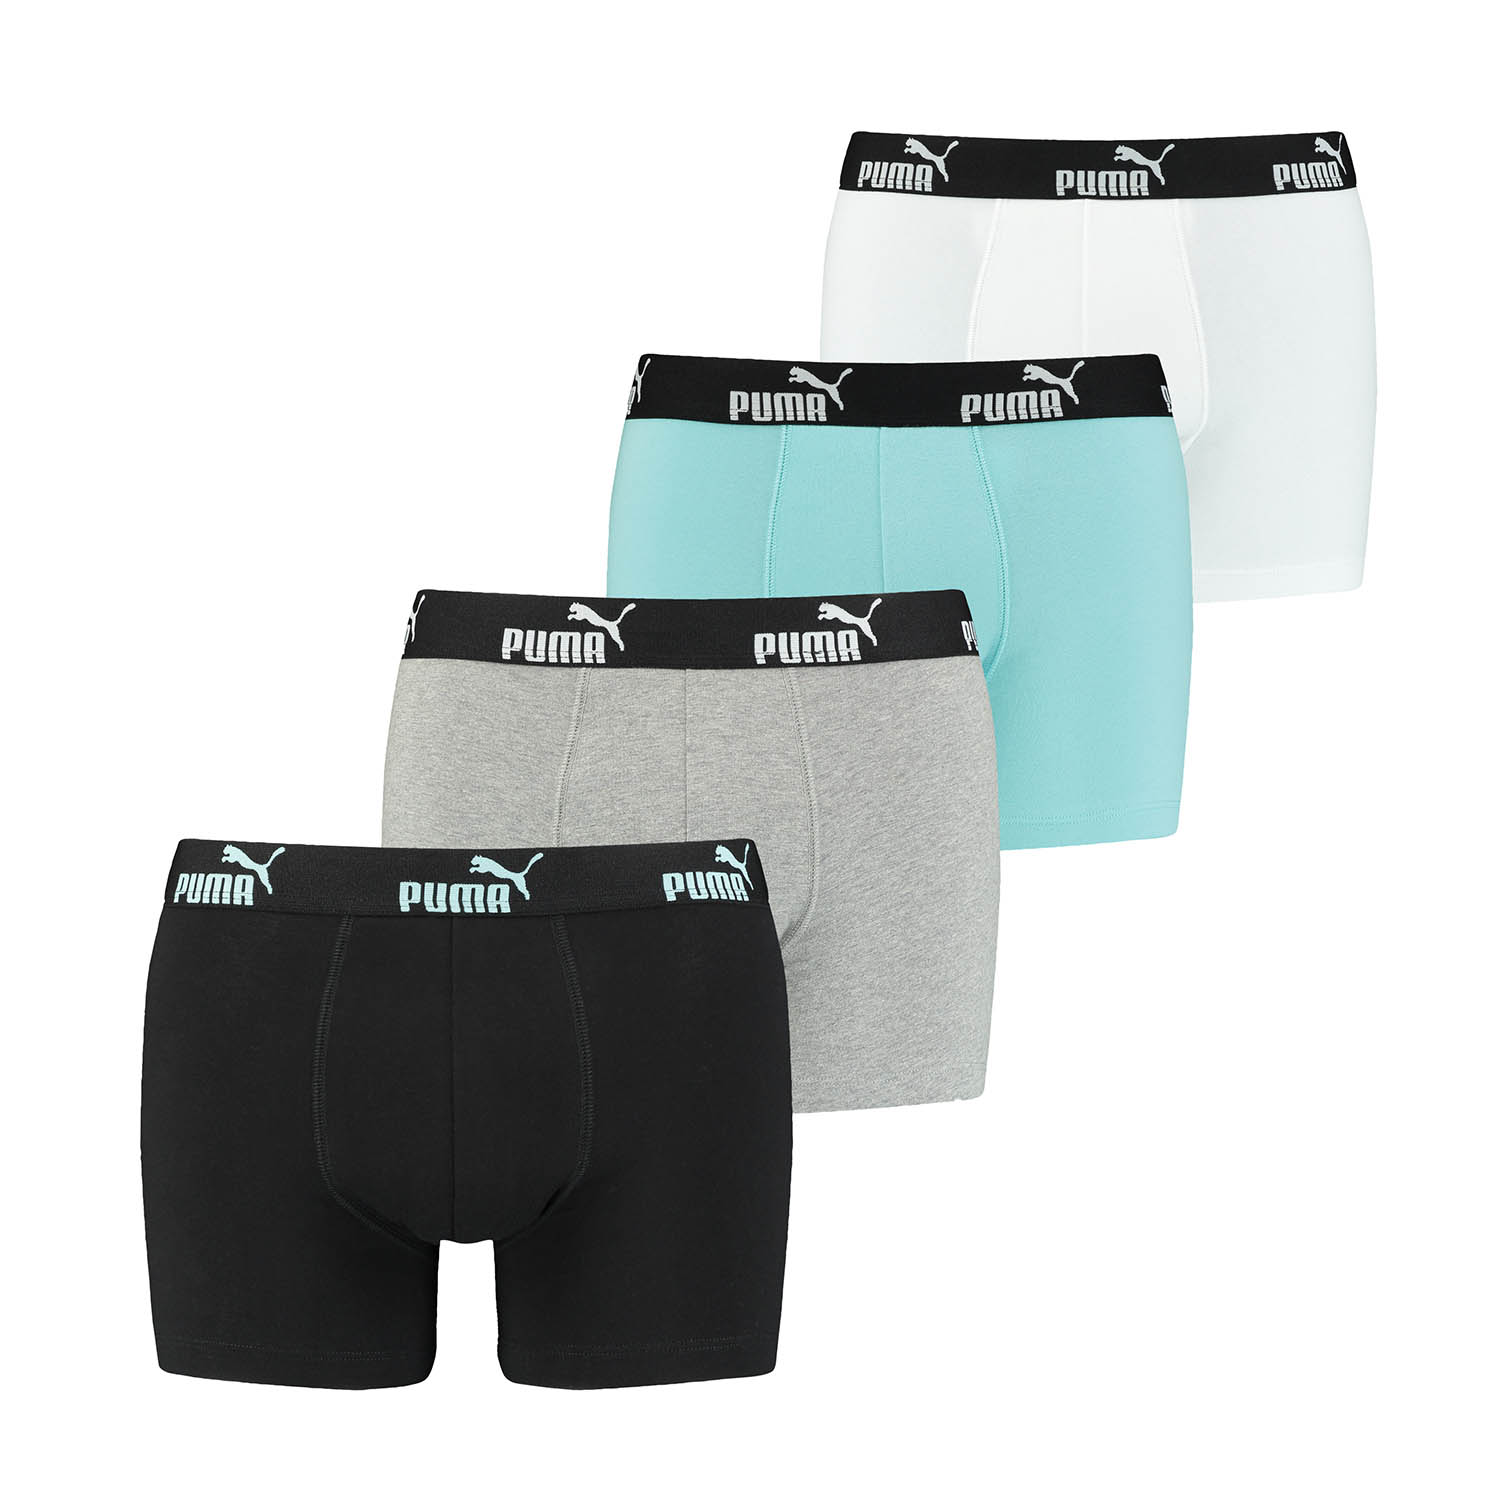 PUMA 12 er Pack Boxer Boxershorts Herren Unterwäsche sportliche Retro Pants, Farbe:Blue Combo, Bekleidungsgröße:S